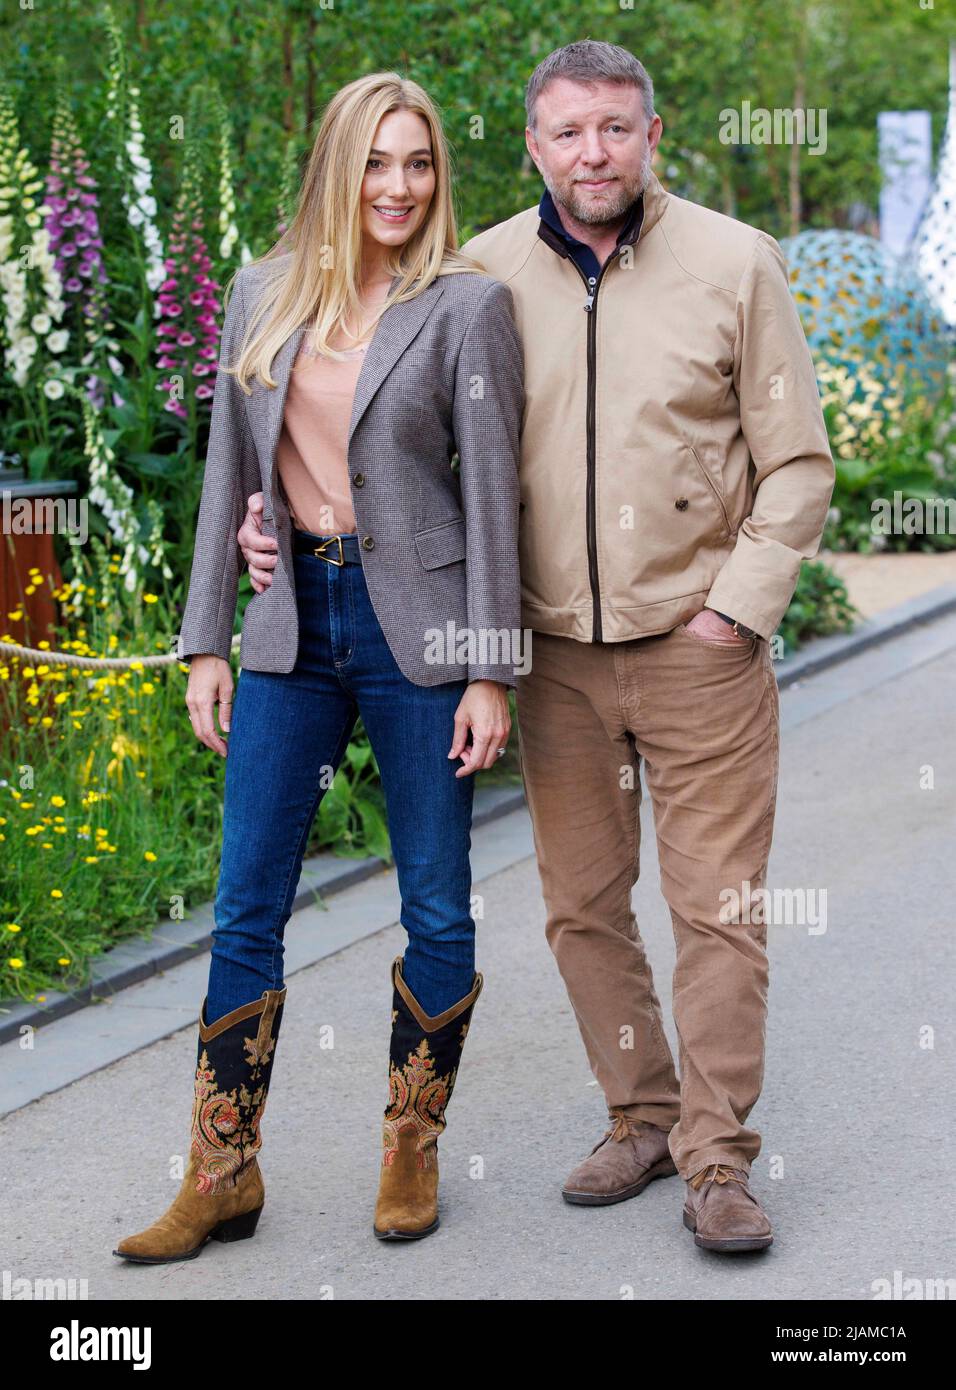 Guy Ritchie, director de cine, productor, guionista y empresario, con su esposa, Jacqui Ainsley, un modelo. Foto de stock